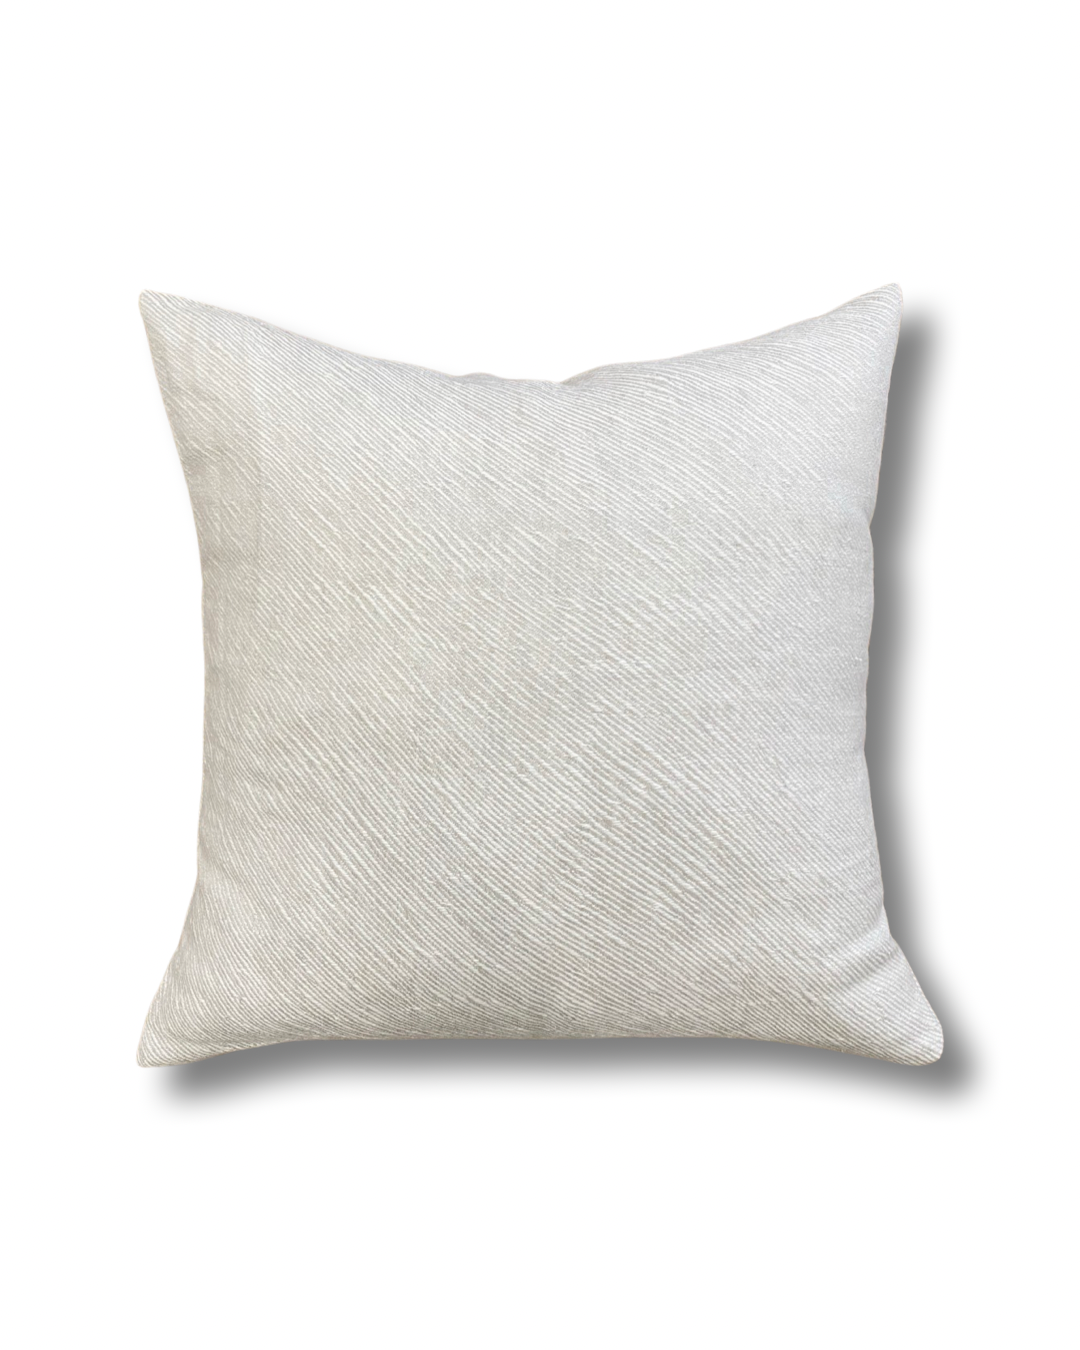 Soft Linen Bias Cushion